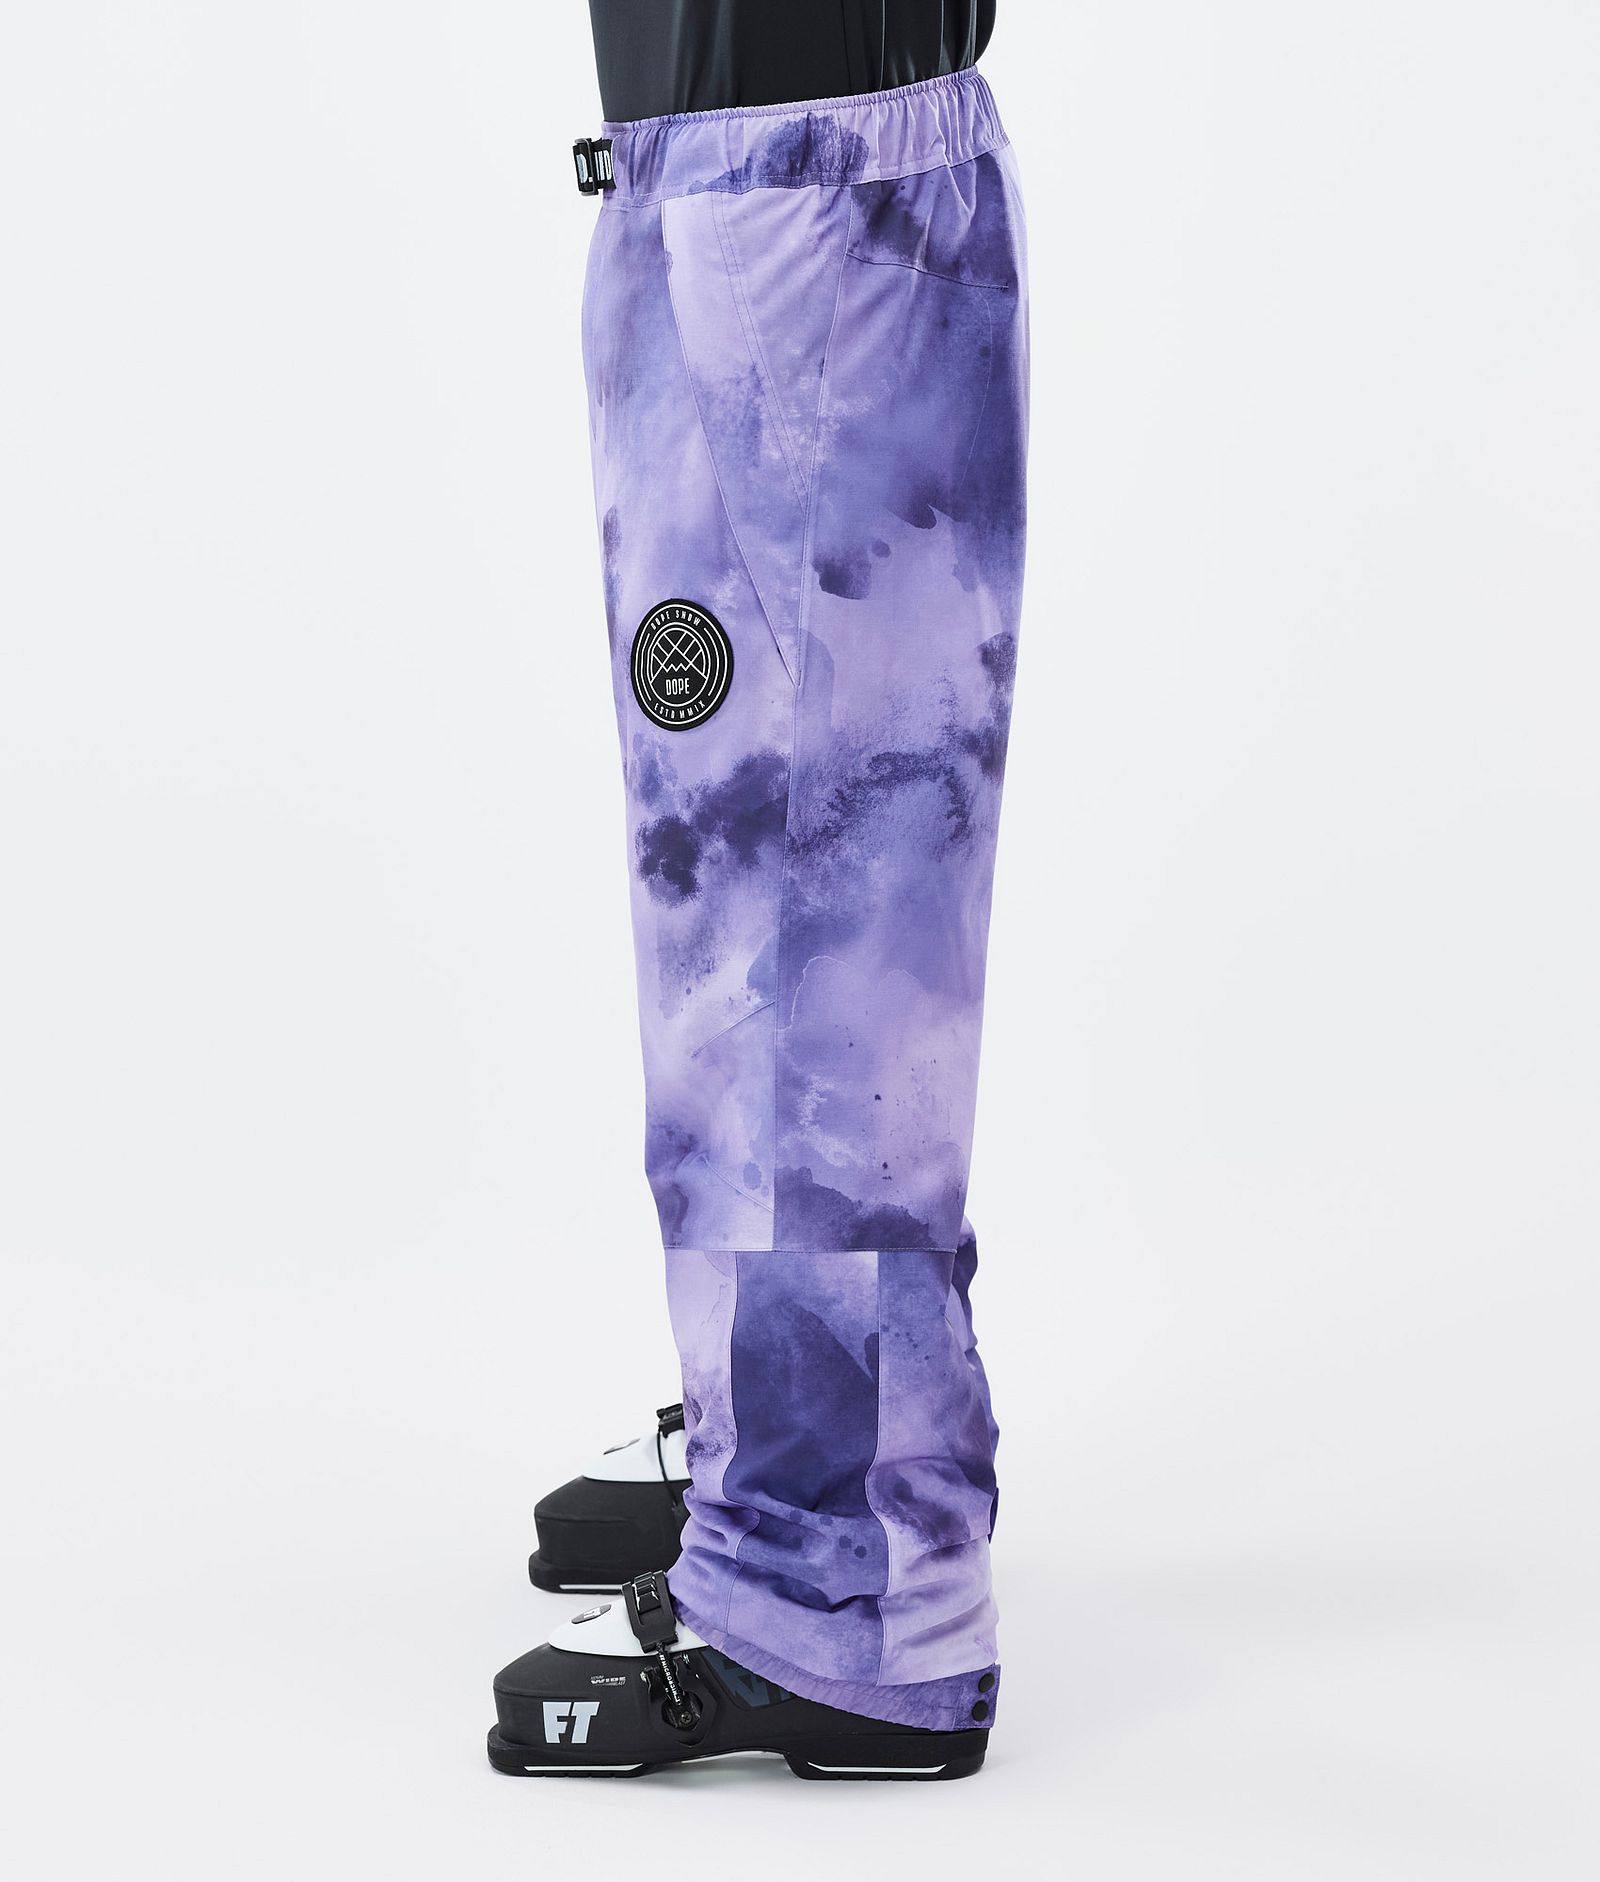 Blizzard スキーパンツ メンズ Liquid Violet